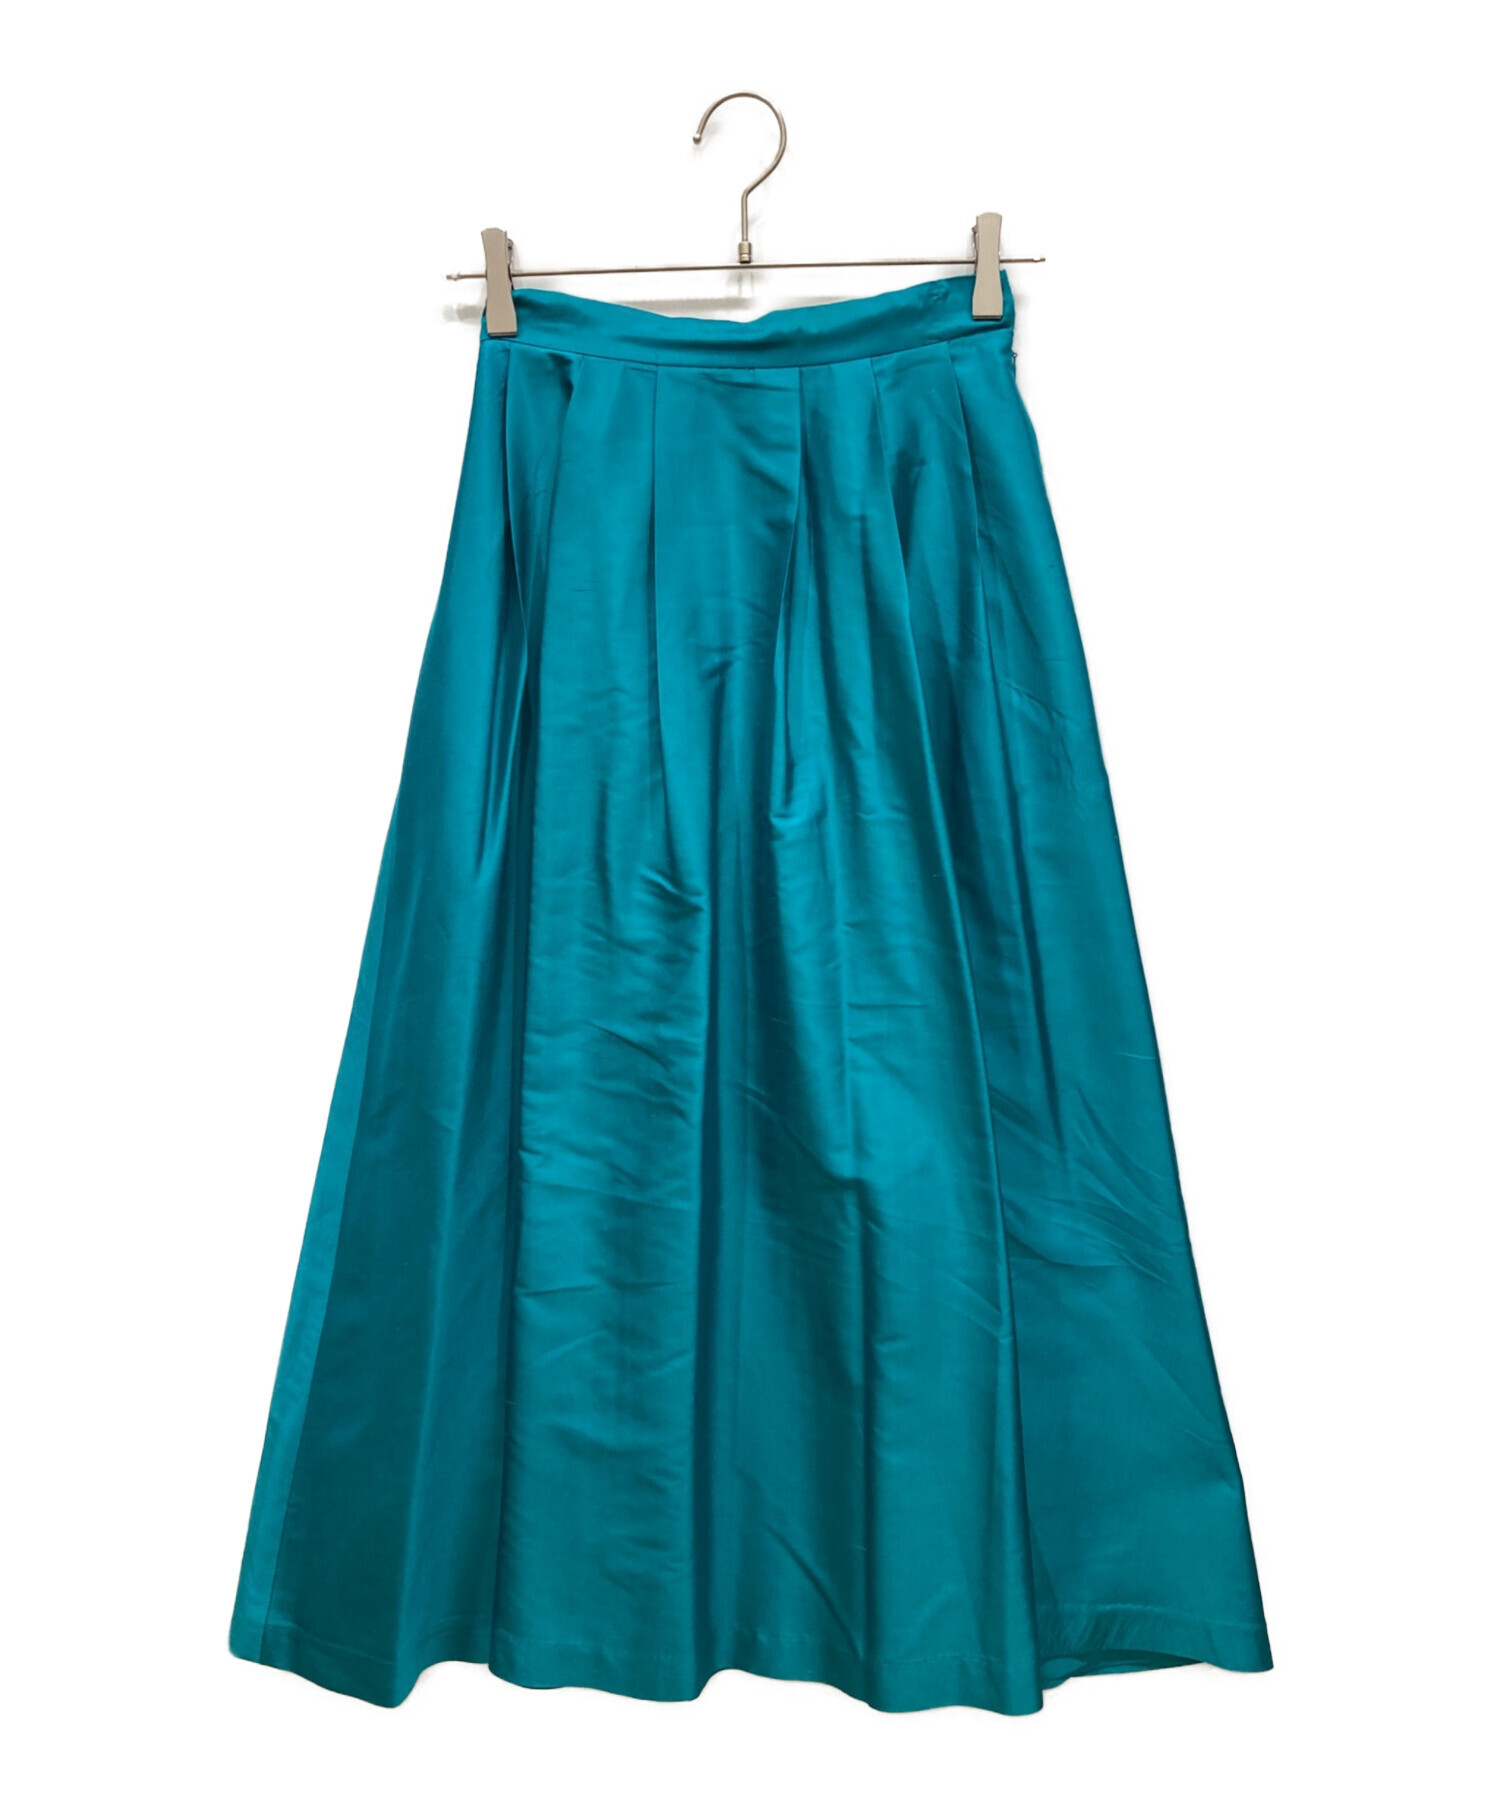 マイランのシルクスカート - ロングスカート